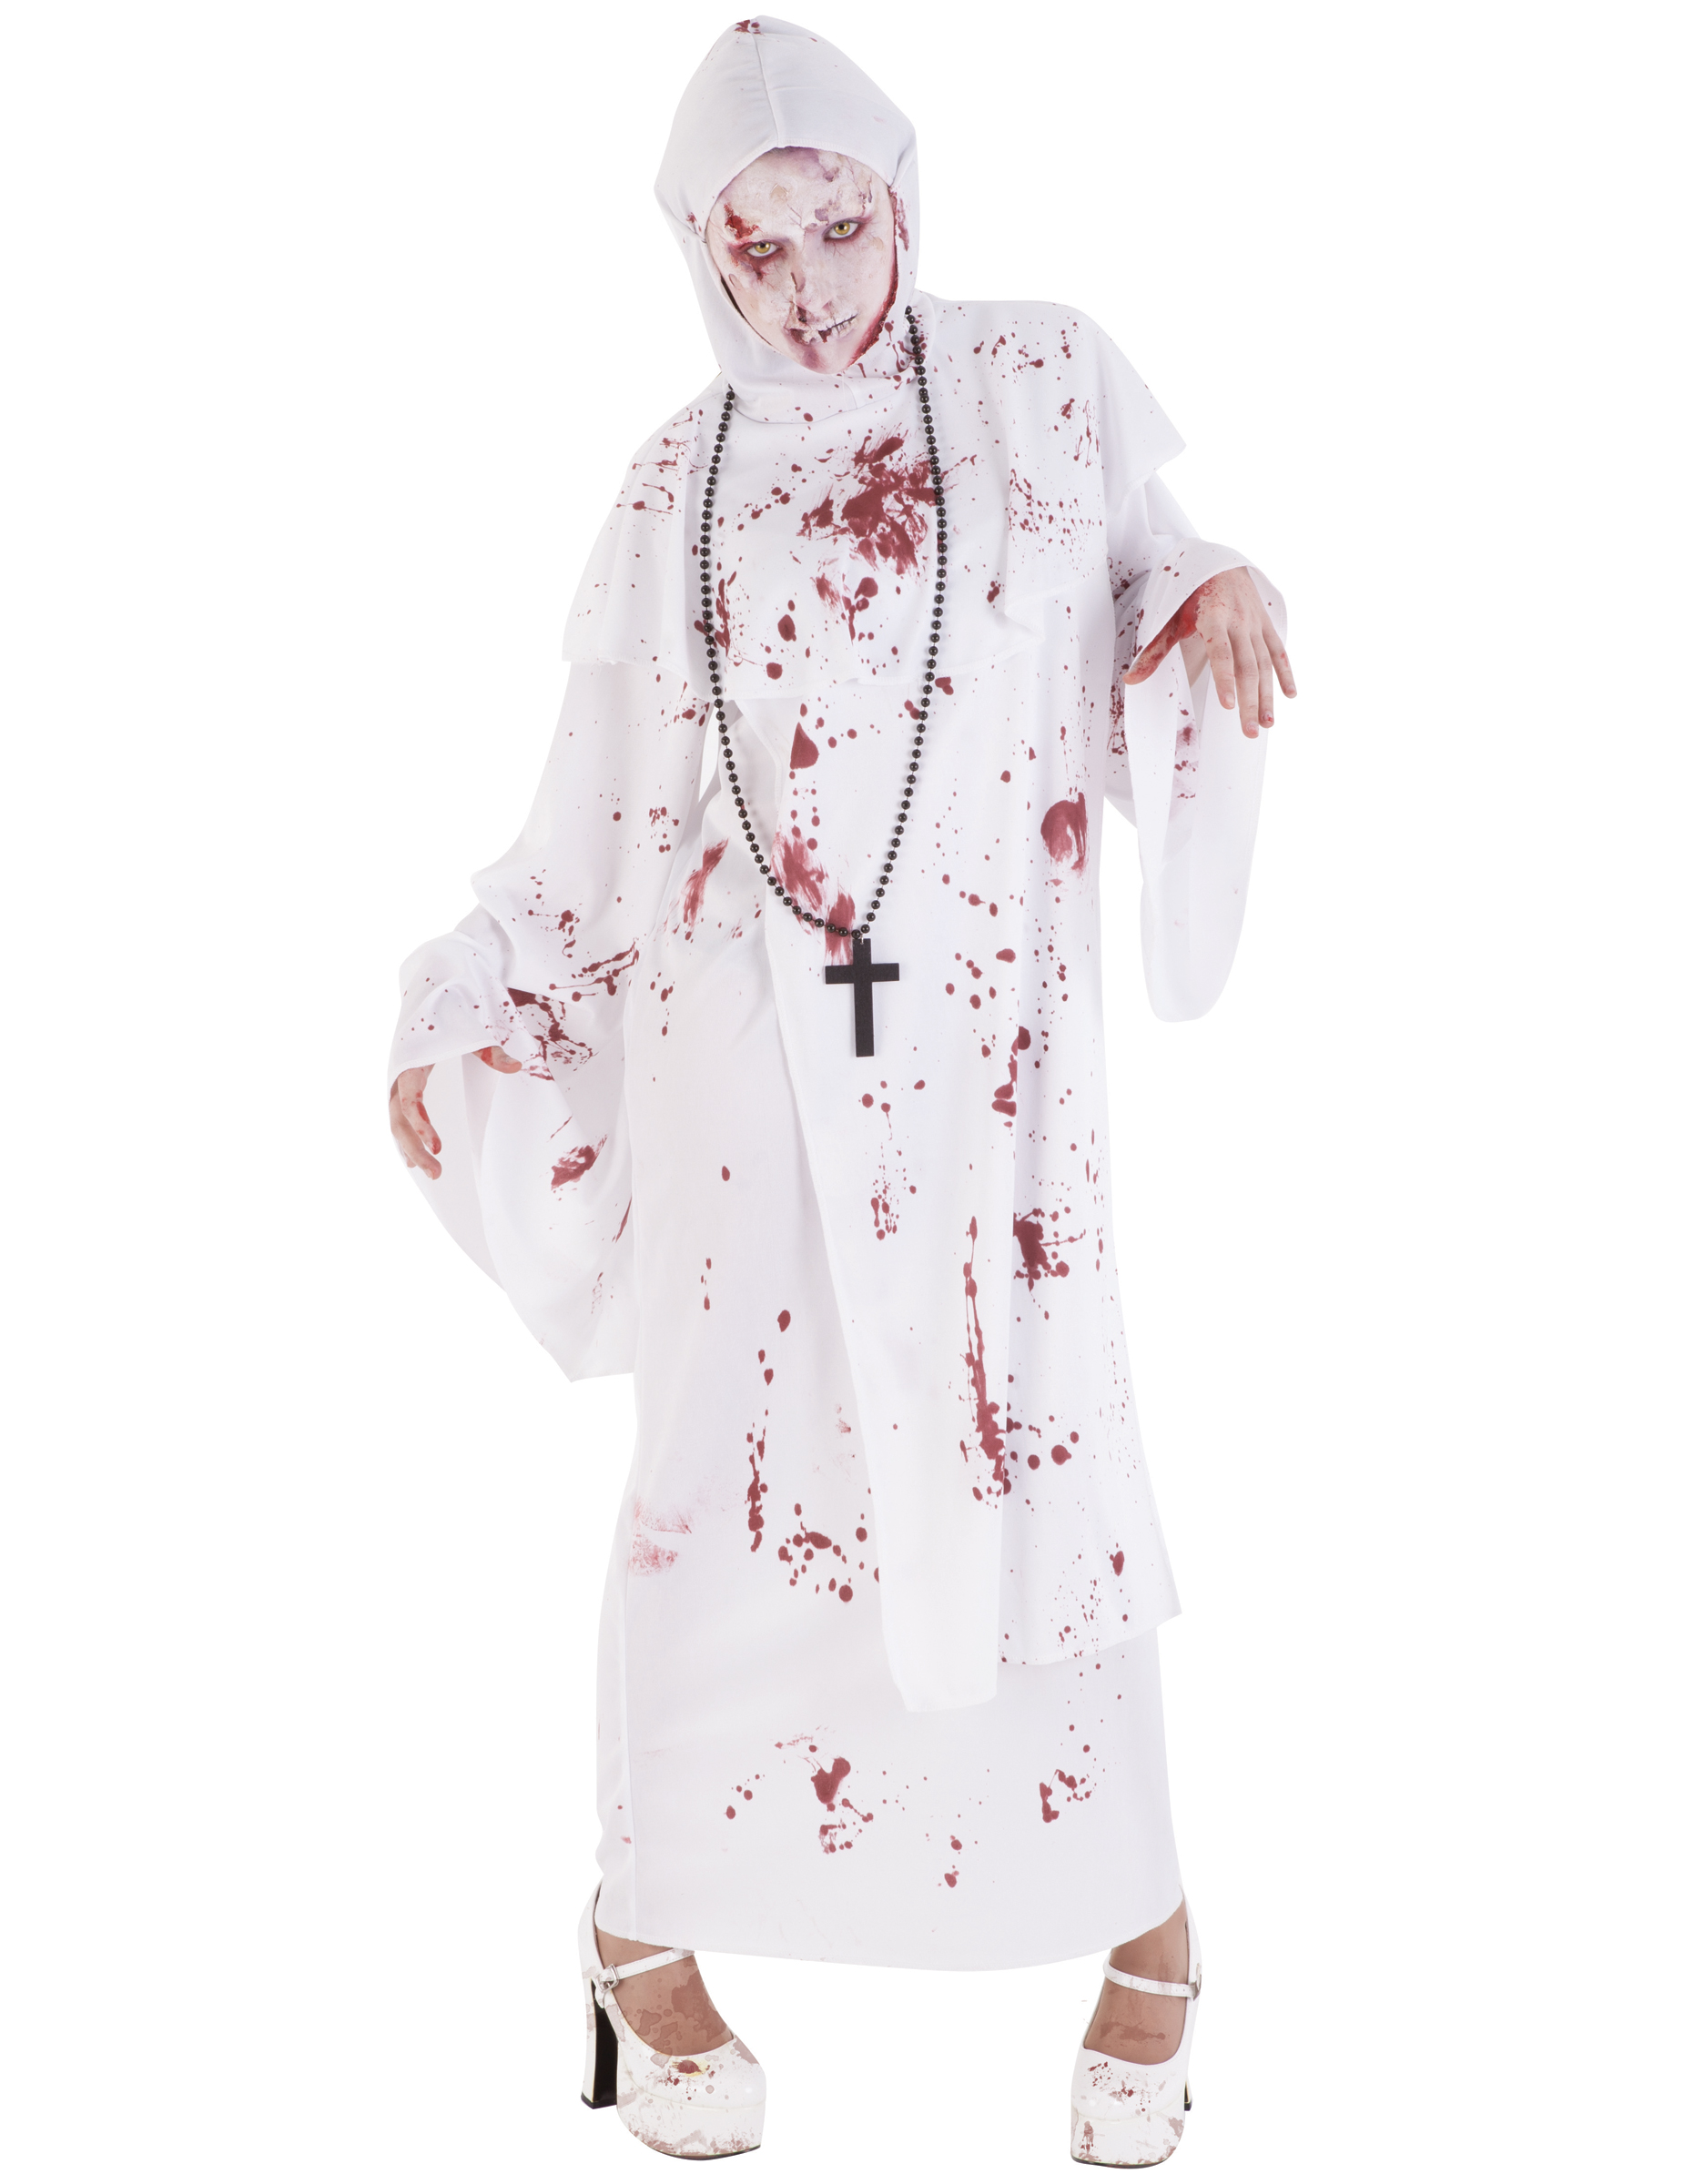 Killer-Nonnen-Kostüm für Damen Halloweenksotüm weiss-rot von RUBIES FRANCE